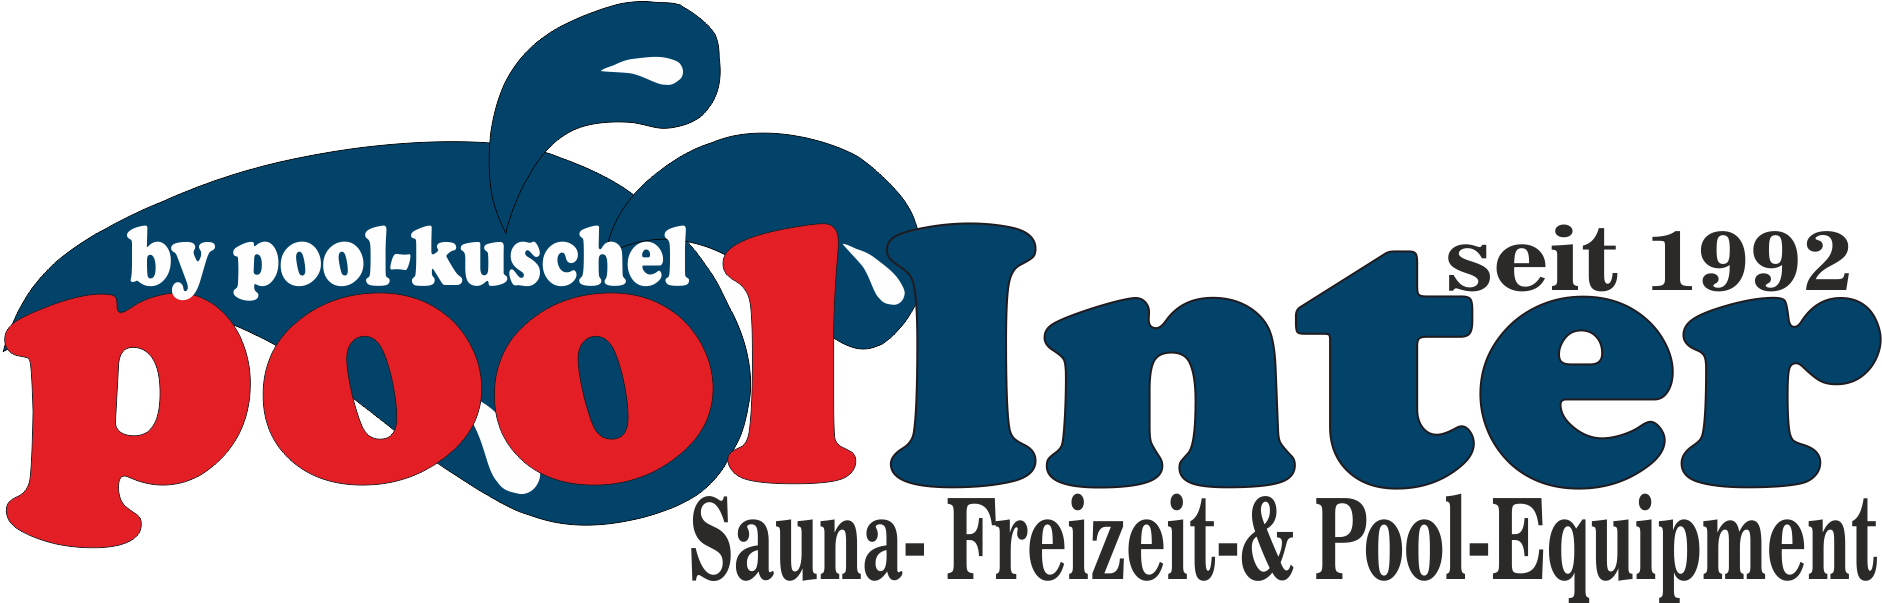 poolinter Shop für Sauna- Freizeit- & Pool-Equipment